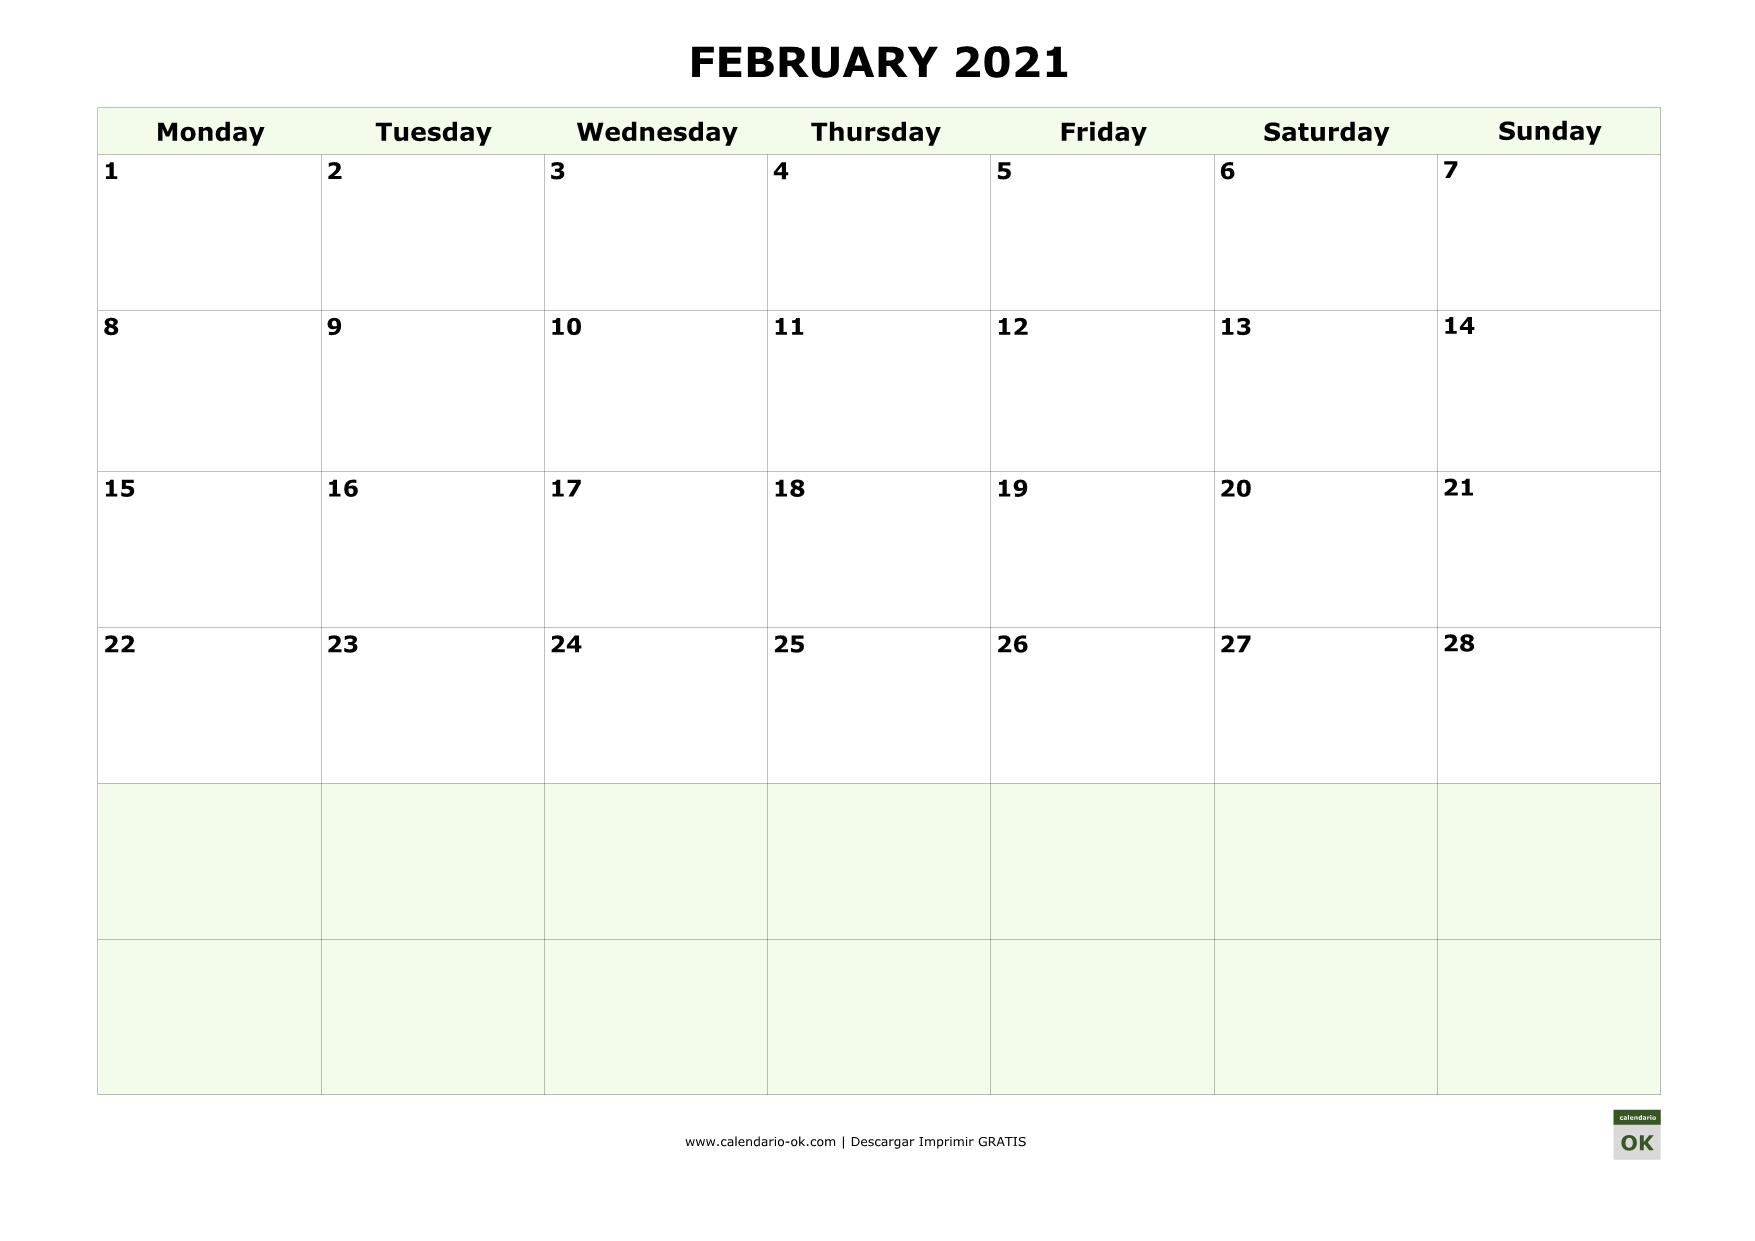 FEBRERO 2021 calendario en INGLES